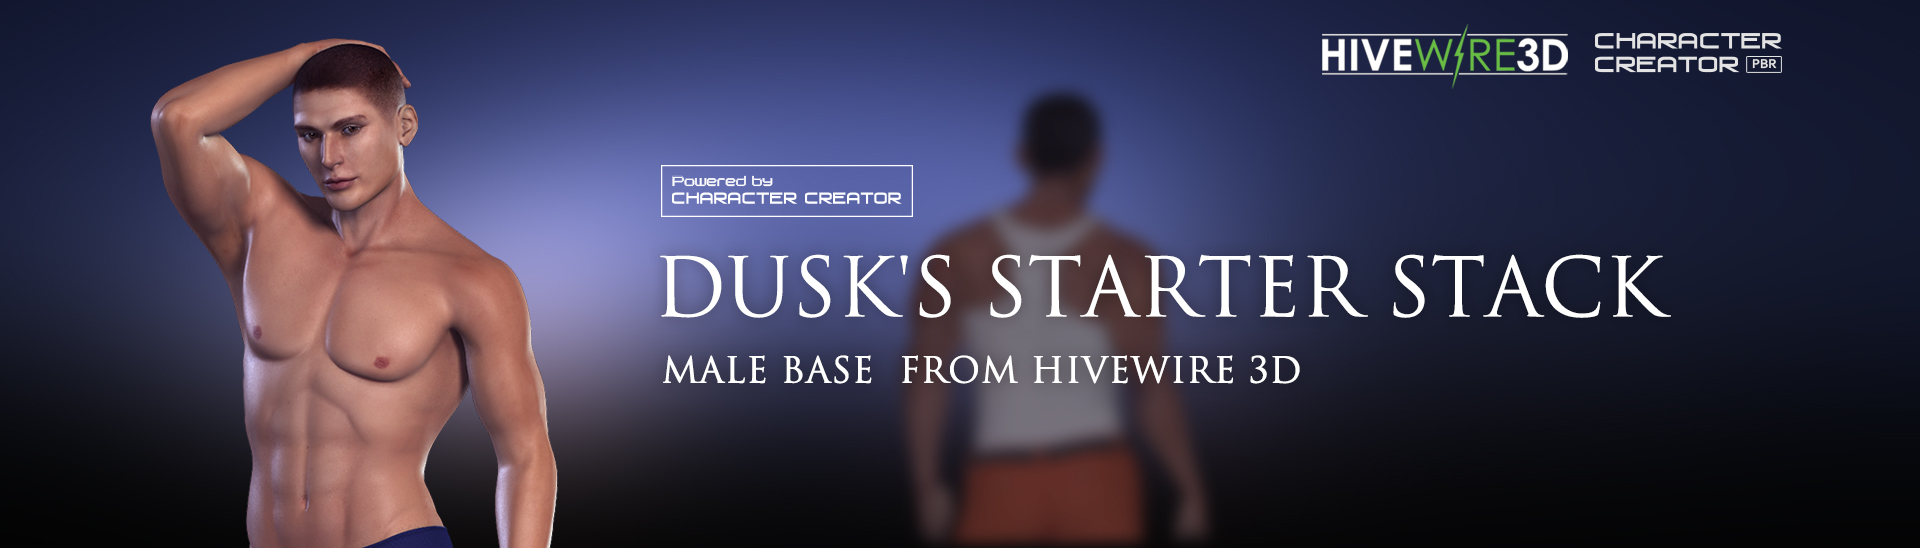 Dusk's Starter Pack